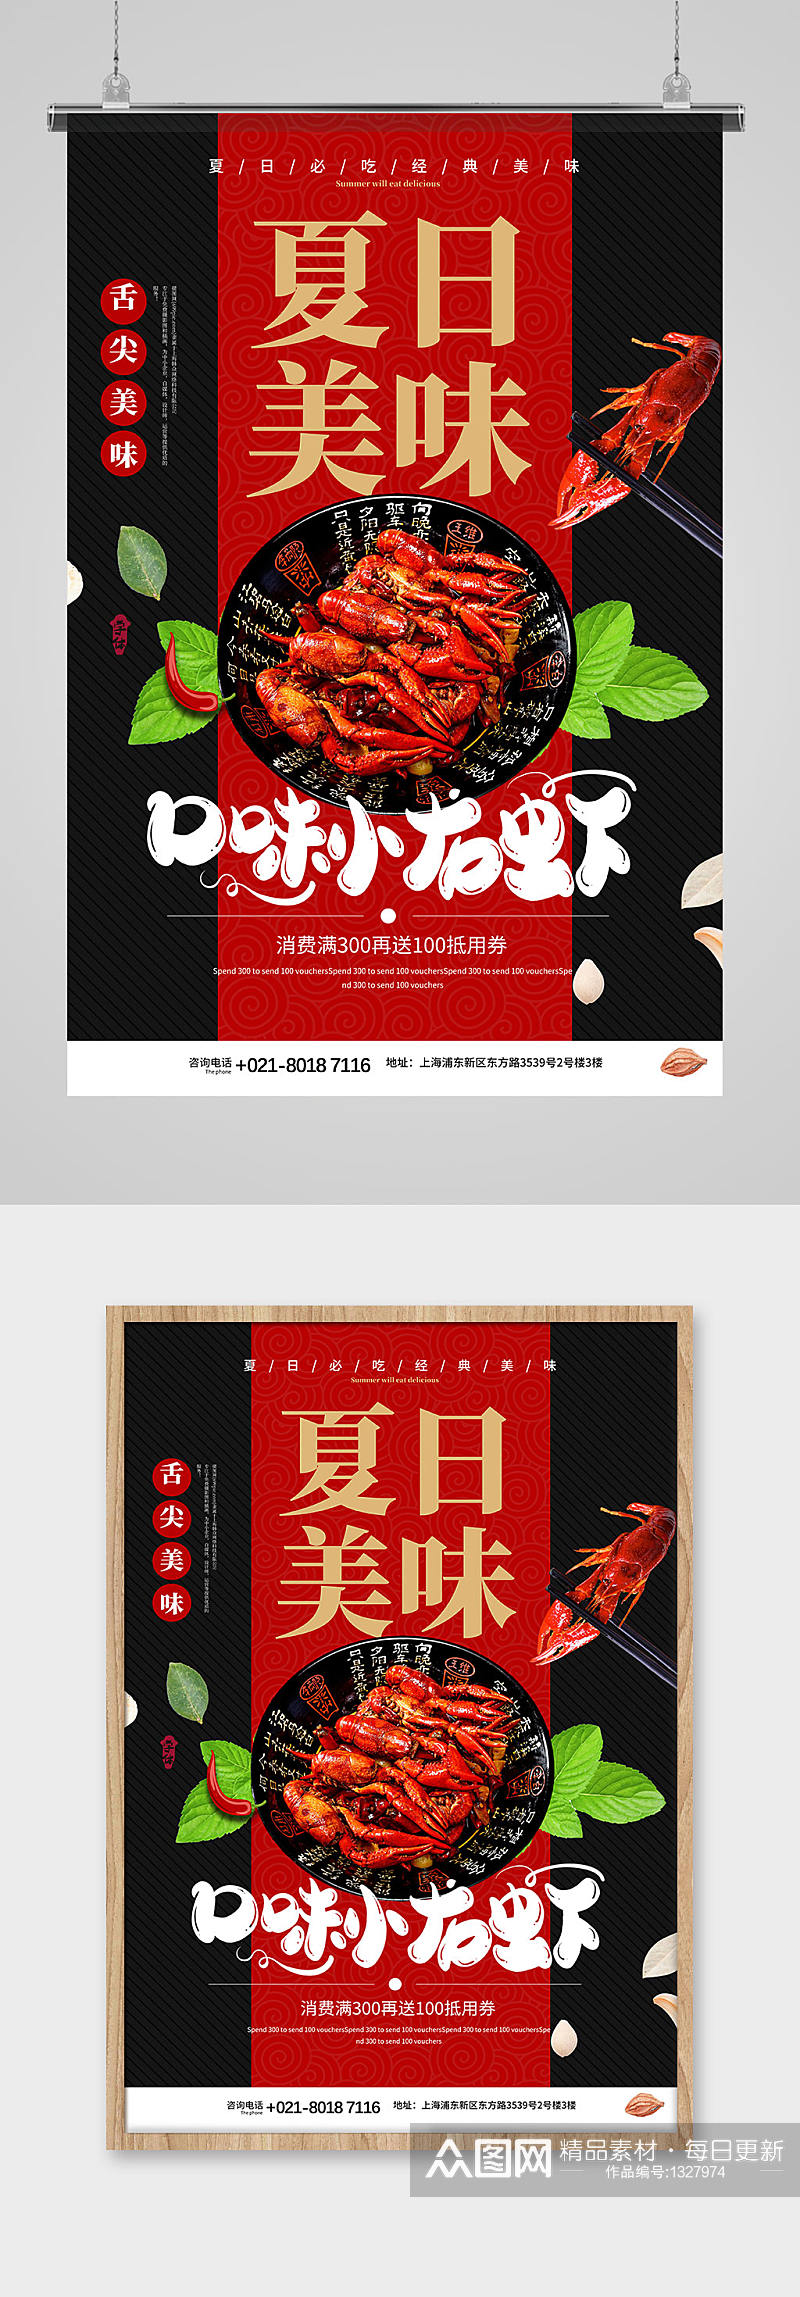 夏日美食小龙虾促销宣传海报素材